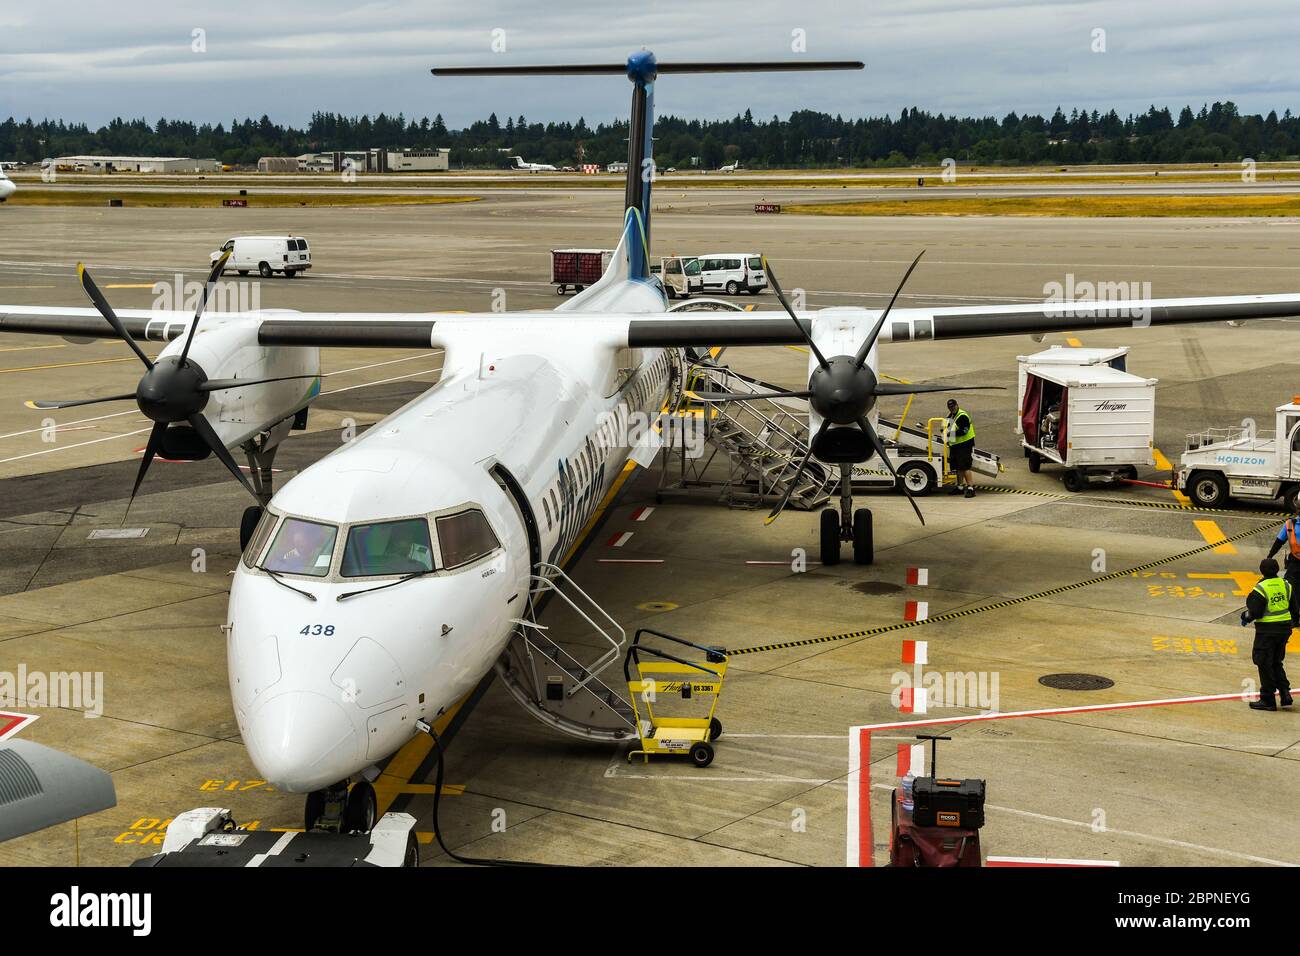 AÉROPORT DE SEATTLE TACOMA, WA, États-Unis - JUIN 2018 : avion turbopropulseur Alaska Airlines de Havilland DHC8 400 attendant que les passagers embarque à l'aéroport de Seattle Banque D'Images